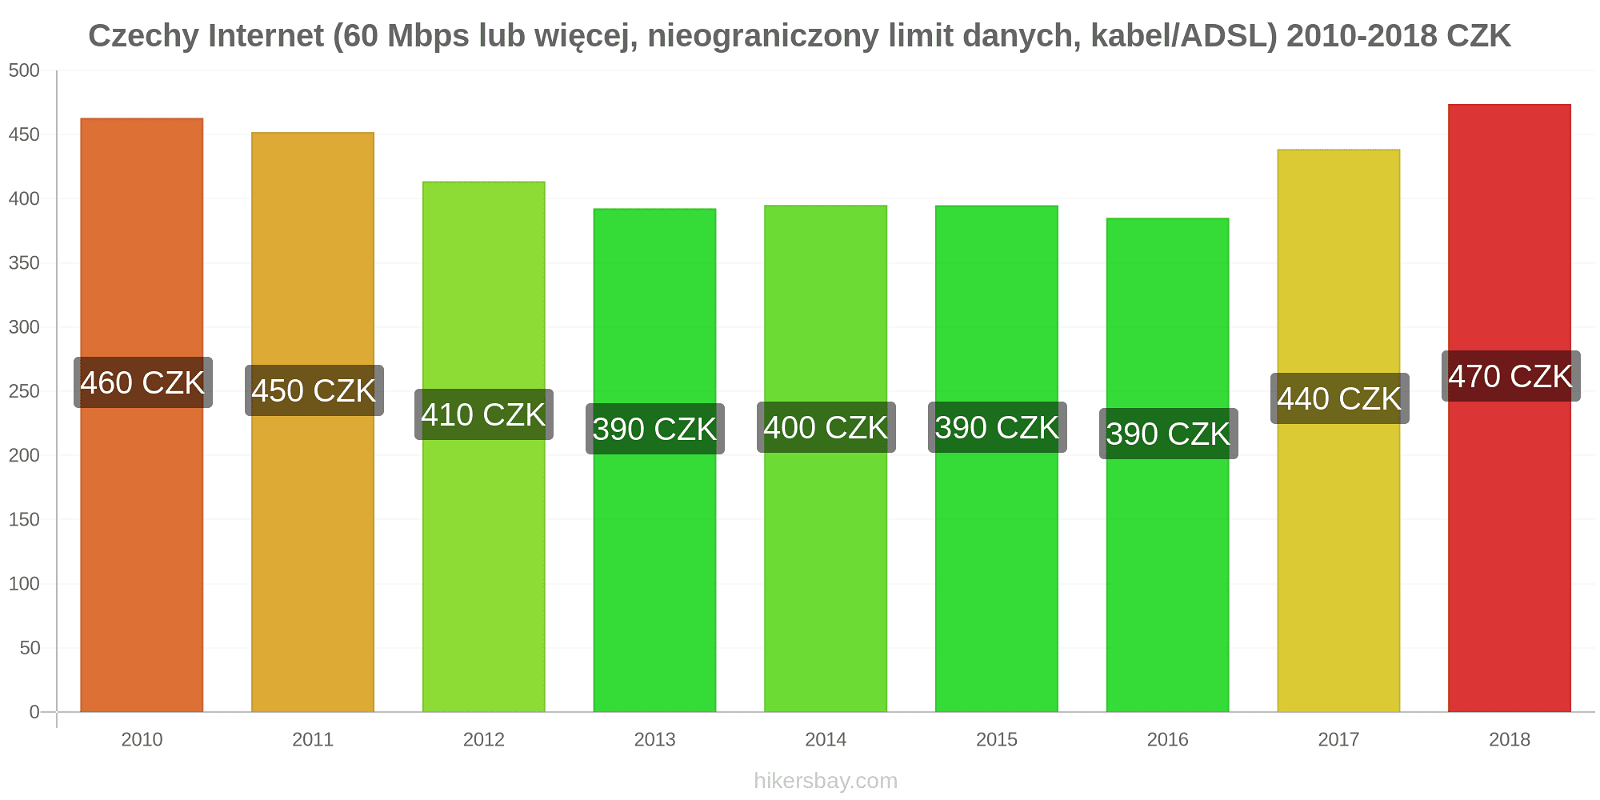 Czechy zmiany cen Internet (60 Mbps lub więcej, nieograniczony limit danych, kabel/ADSL) hikersbay.com